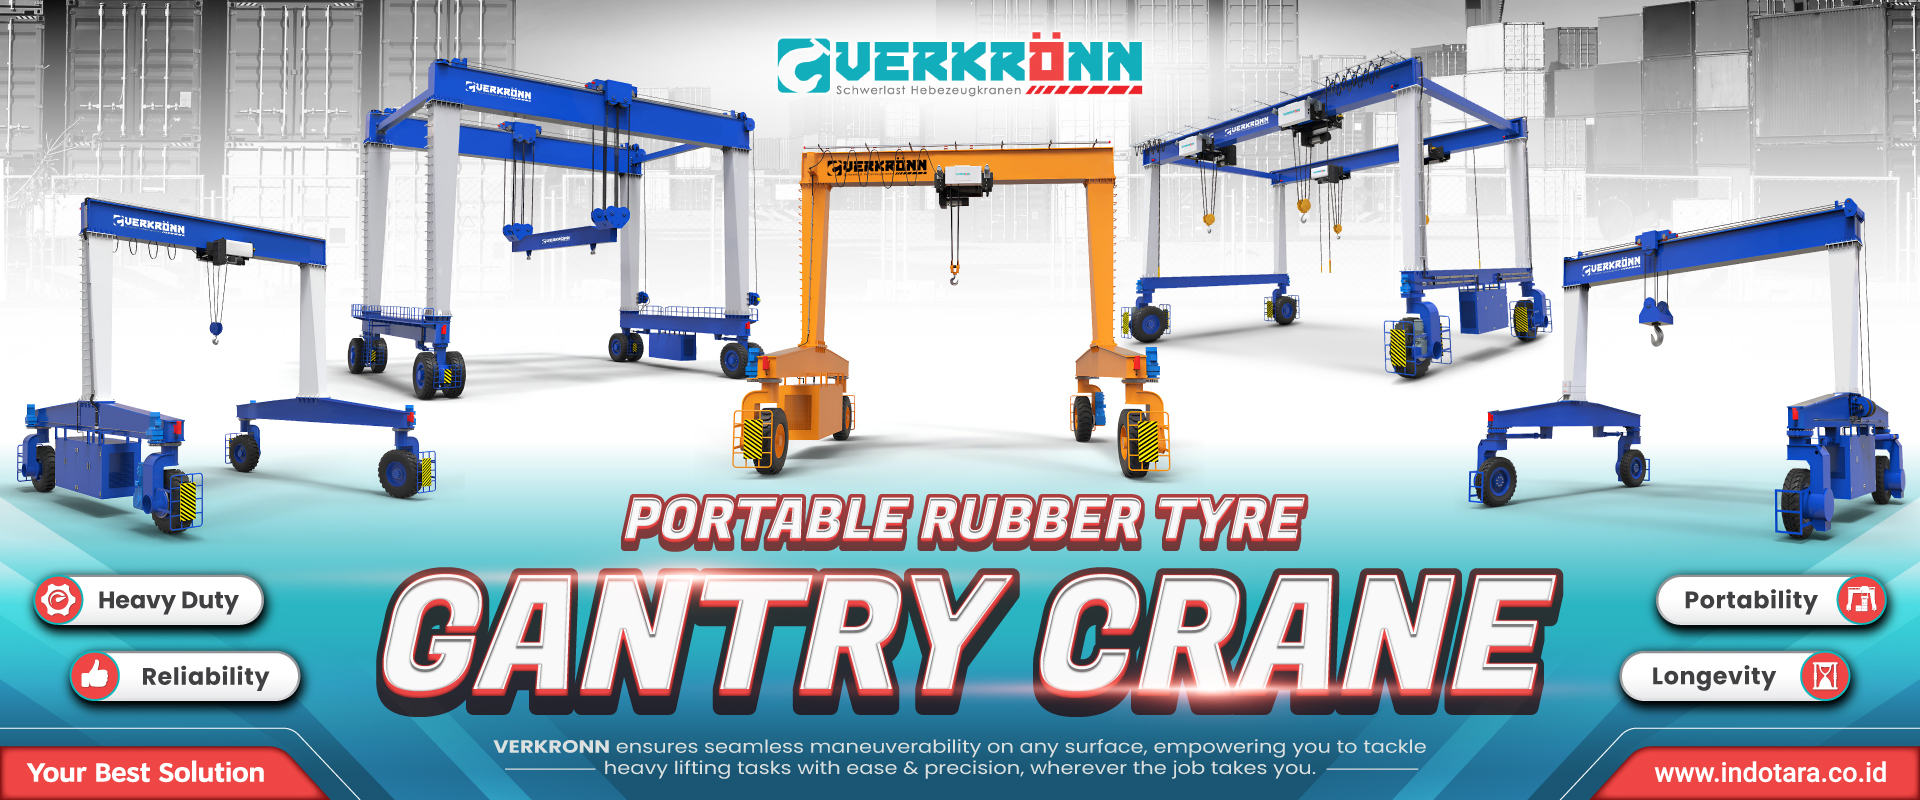 Verkronn Portable Rubber Tyre Gantry Crane